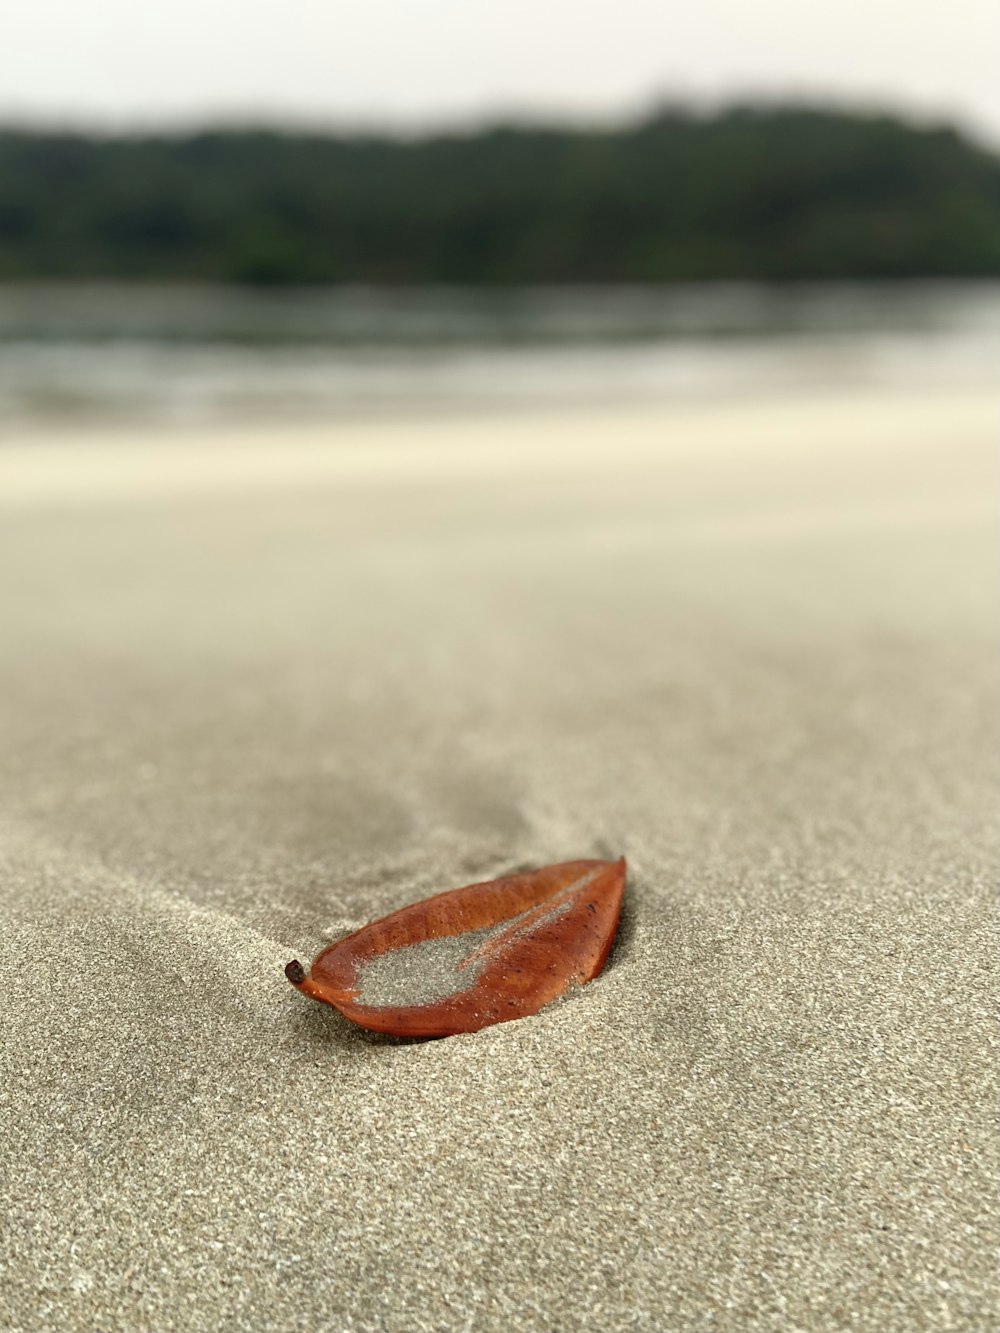 a single leaf laying on a sandy beach